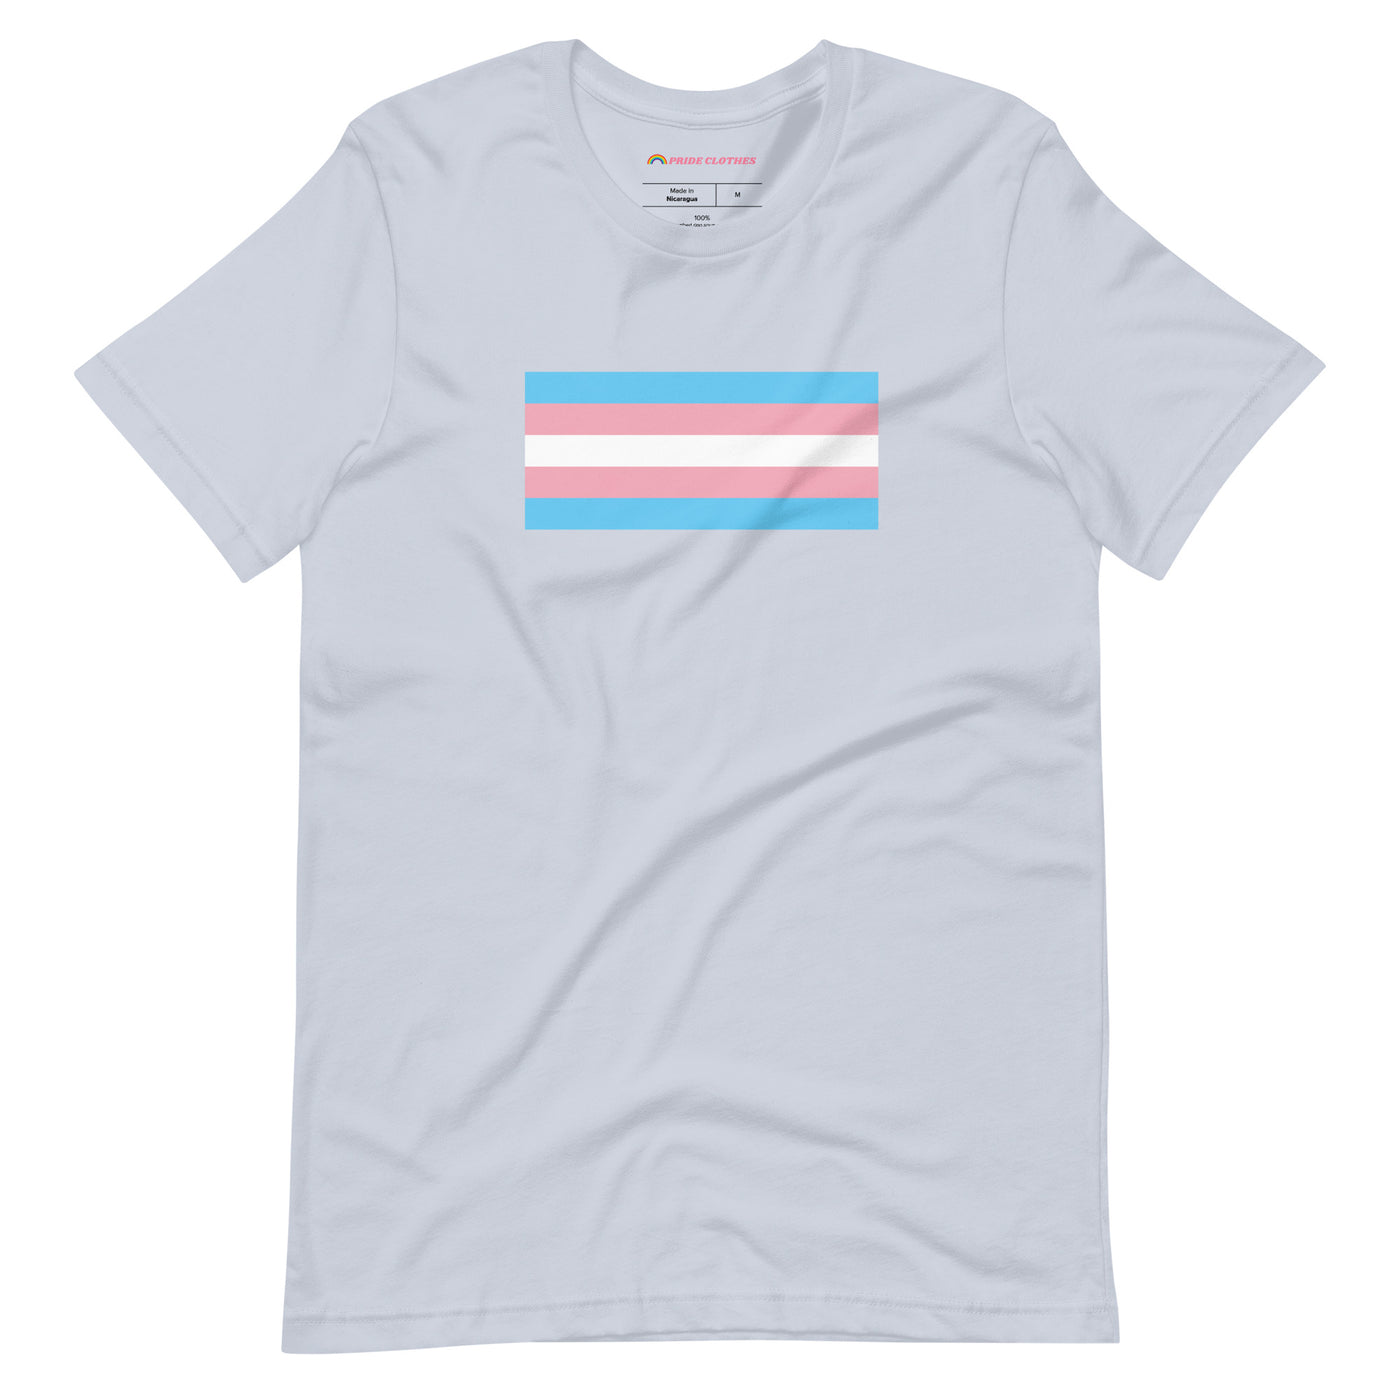 PrideClothes - Transgender Pride Flag T-Shirt - Light Blue